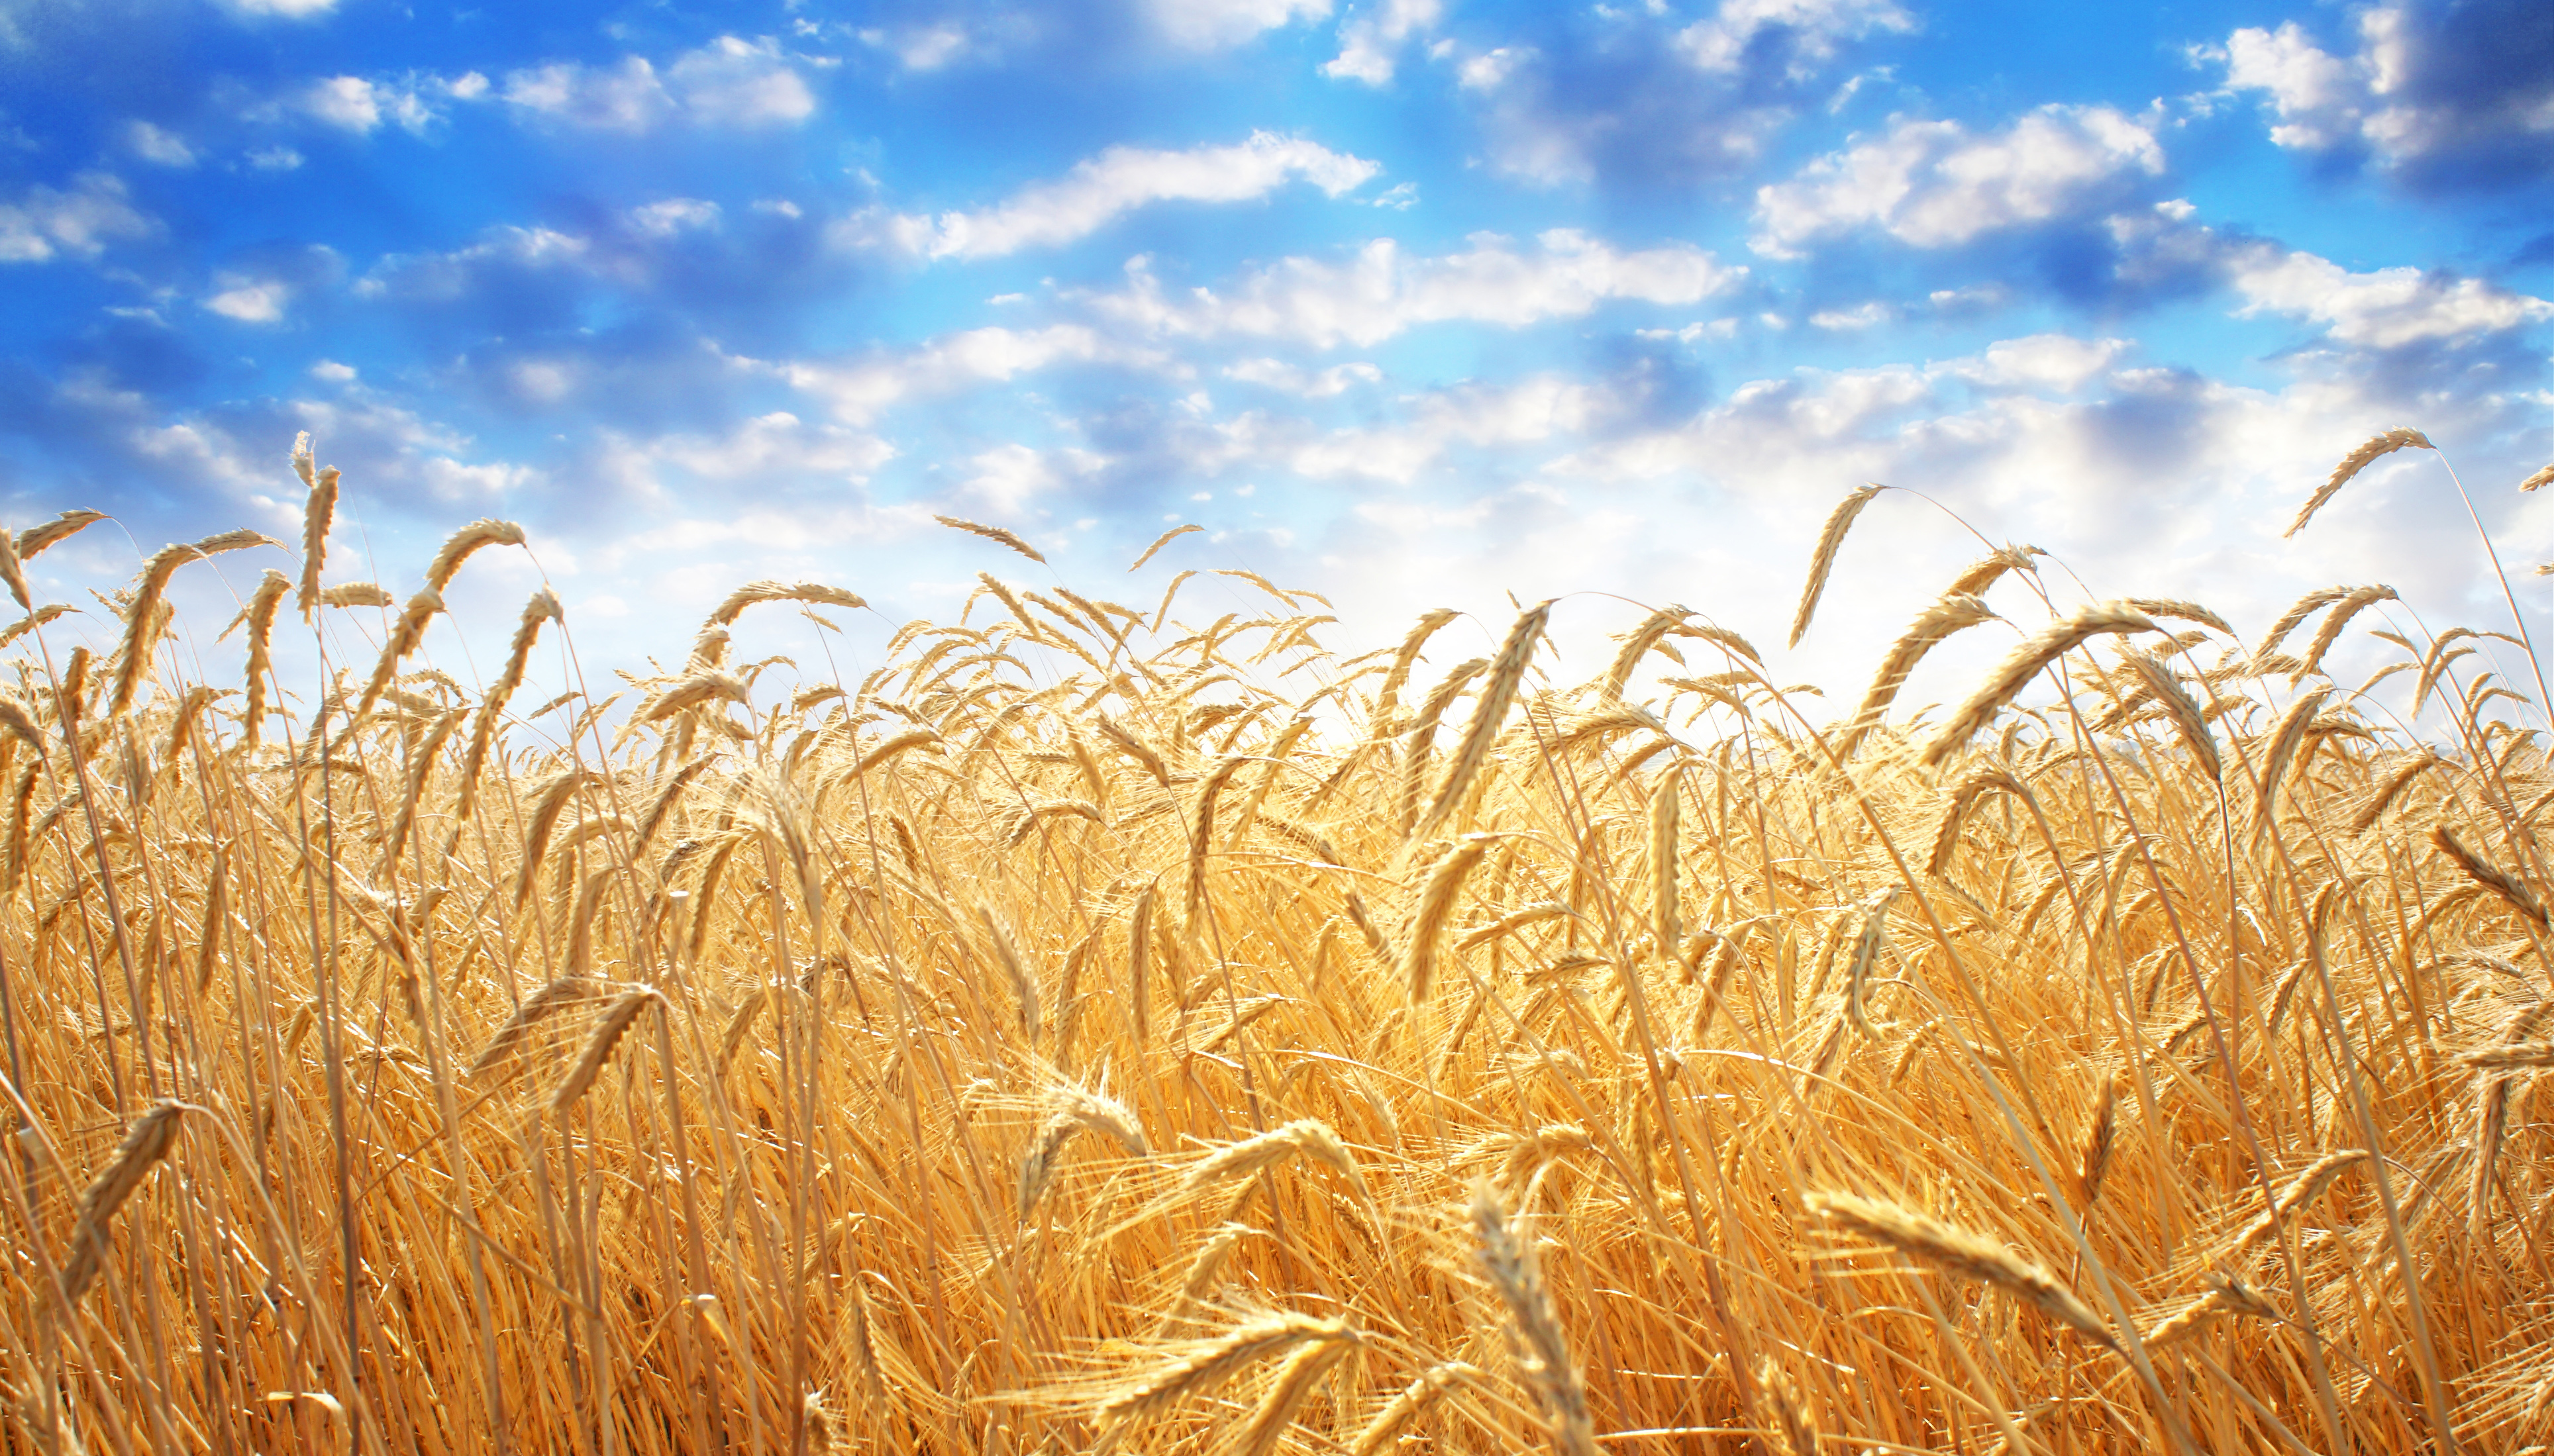 74-15223254-ear-of-wheat.jpg